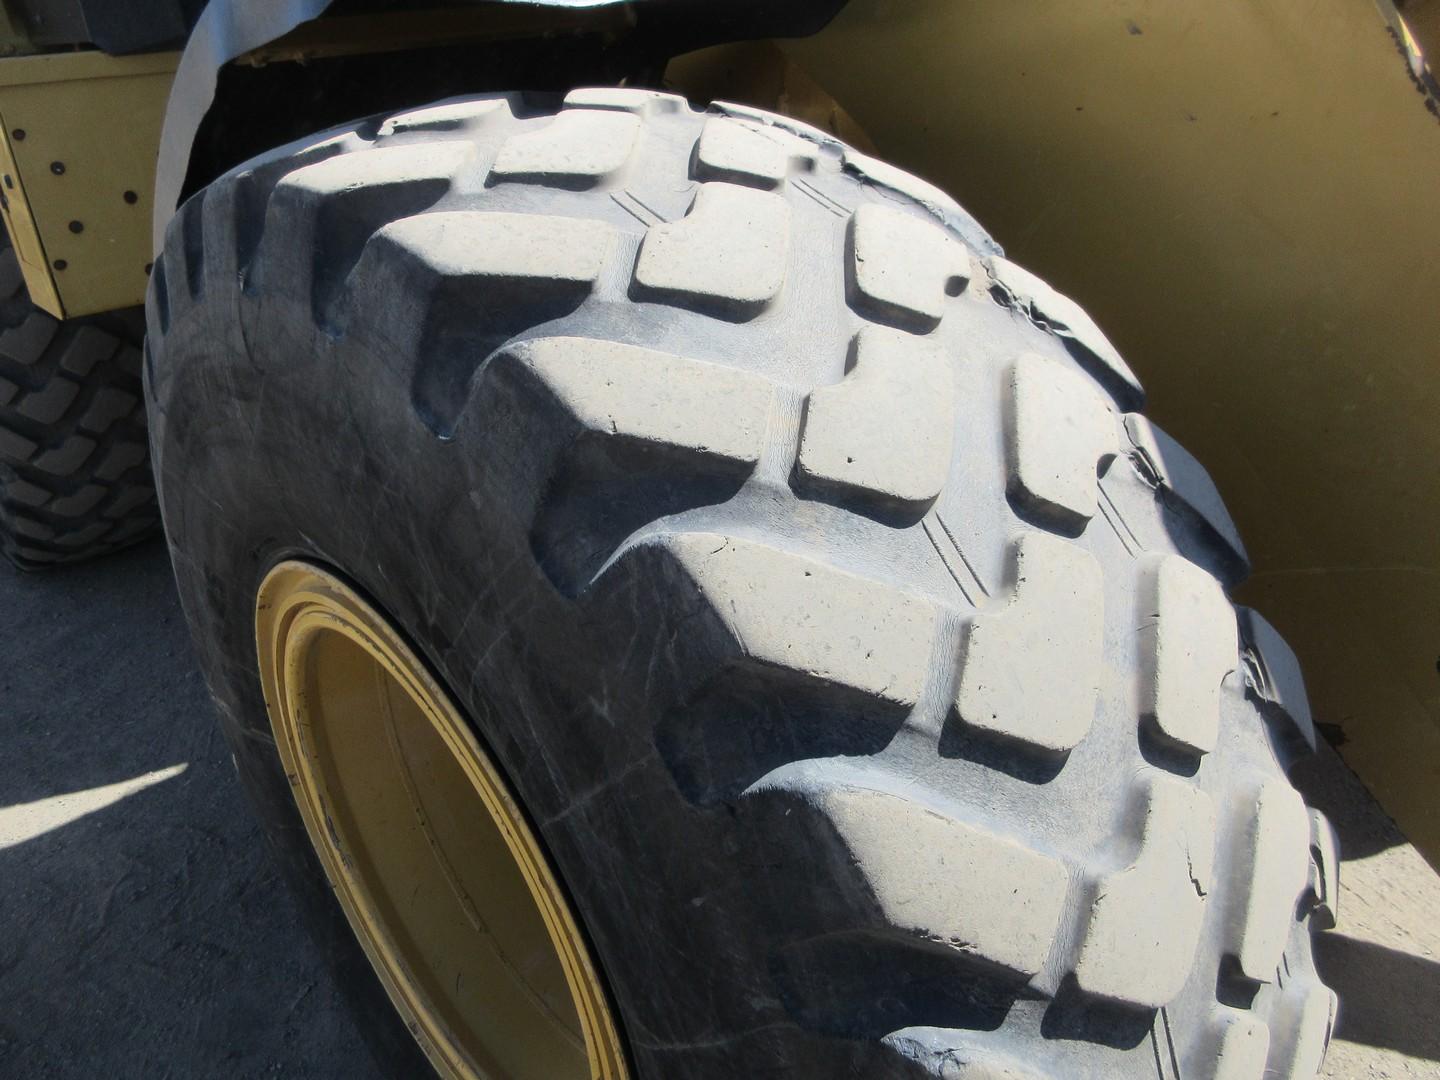 2015 Caterpillar 930M Rubber Tire Wheel Loader